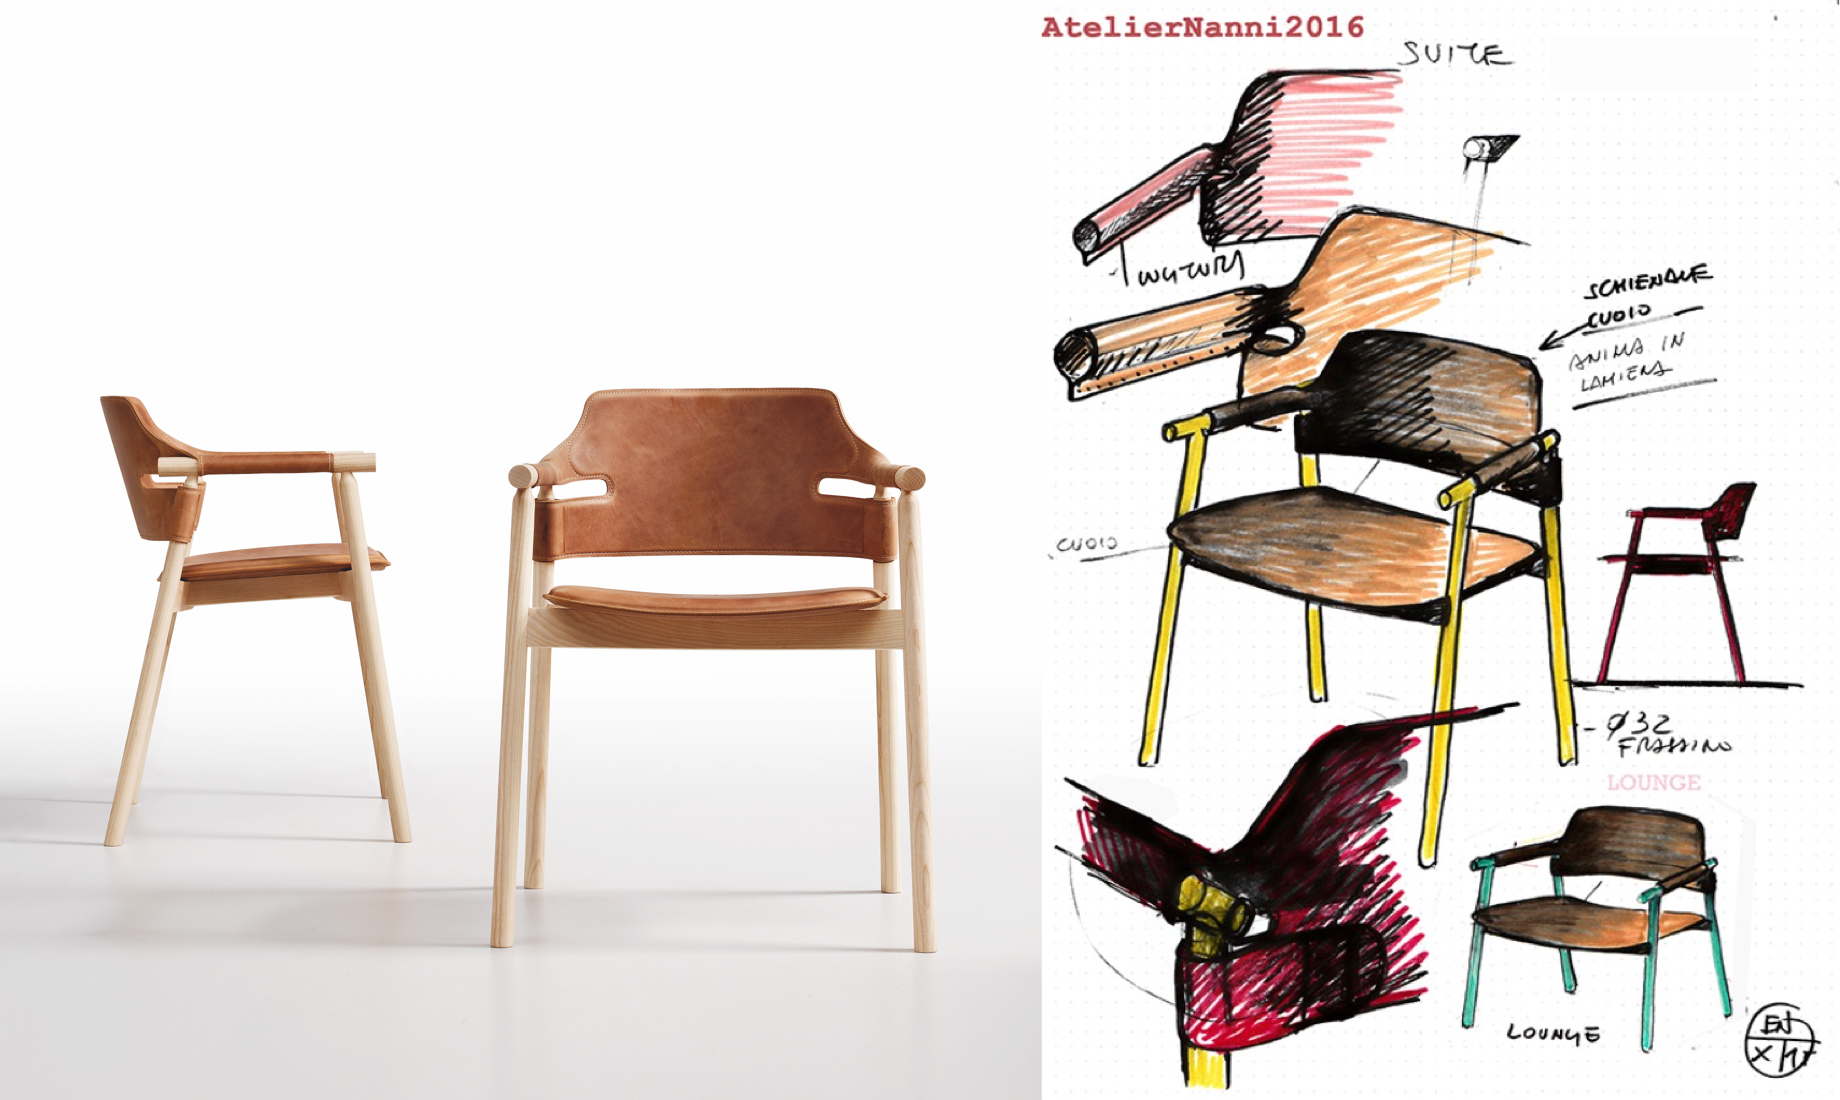 À gauche le fauteuil Suite, à droite l'esquisse de son design, design AtelierNanni.